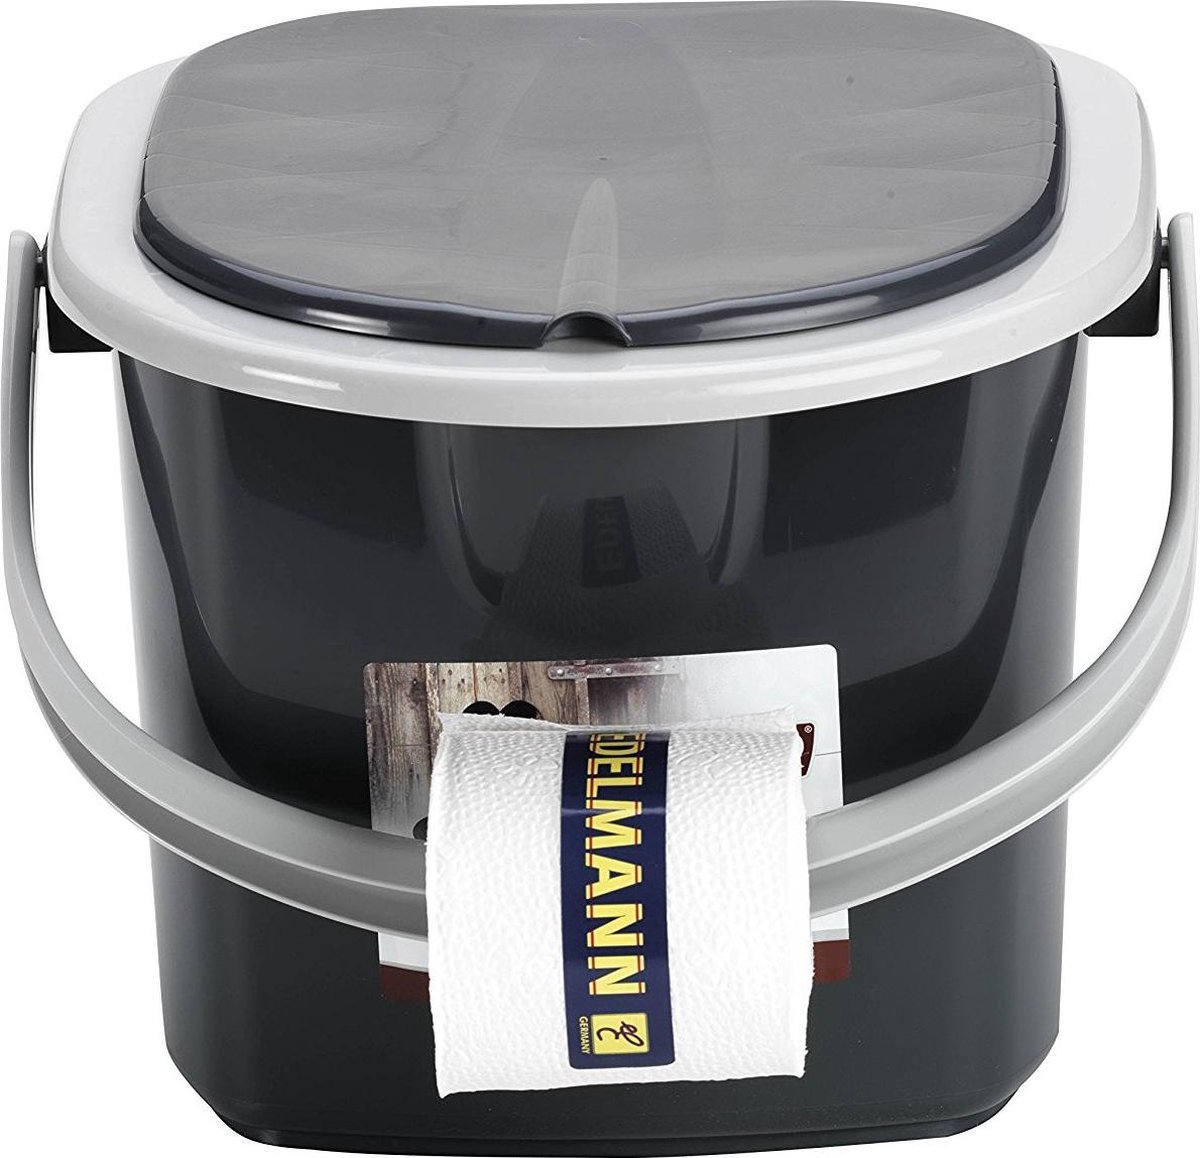 Seau de toilette Branq Portable avec couvercle - 15,5 L - Anthracite |  bol.com